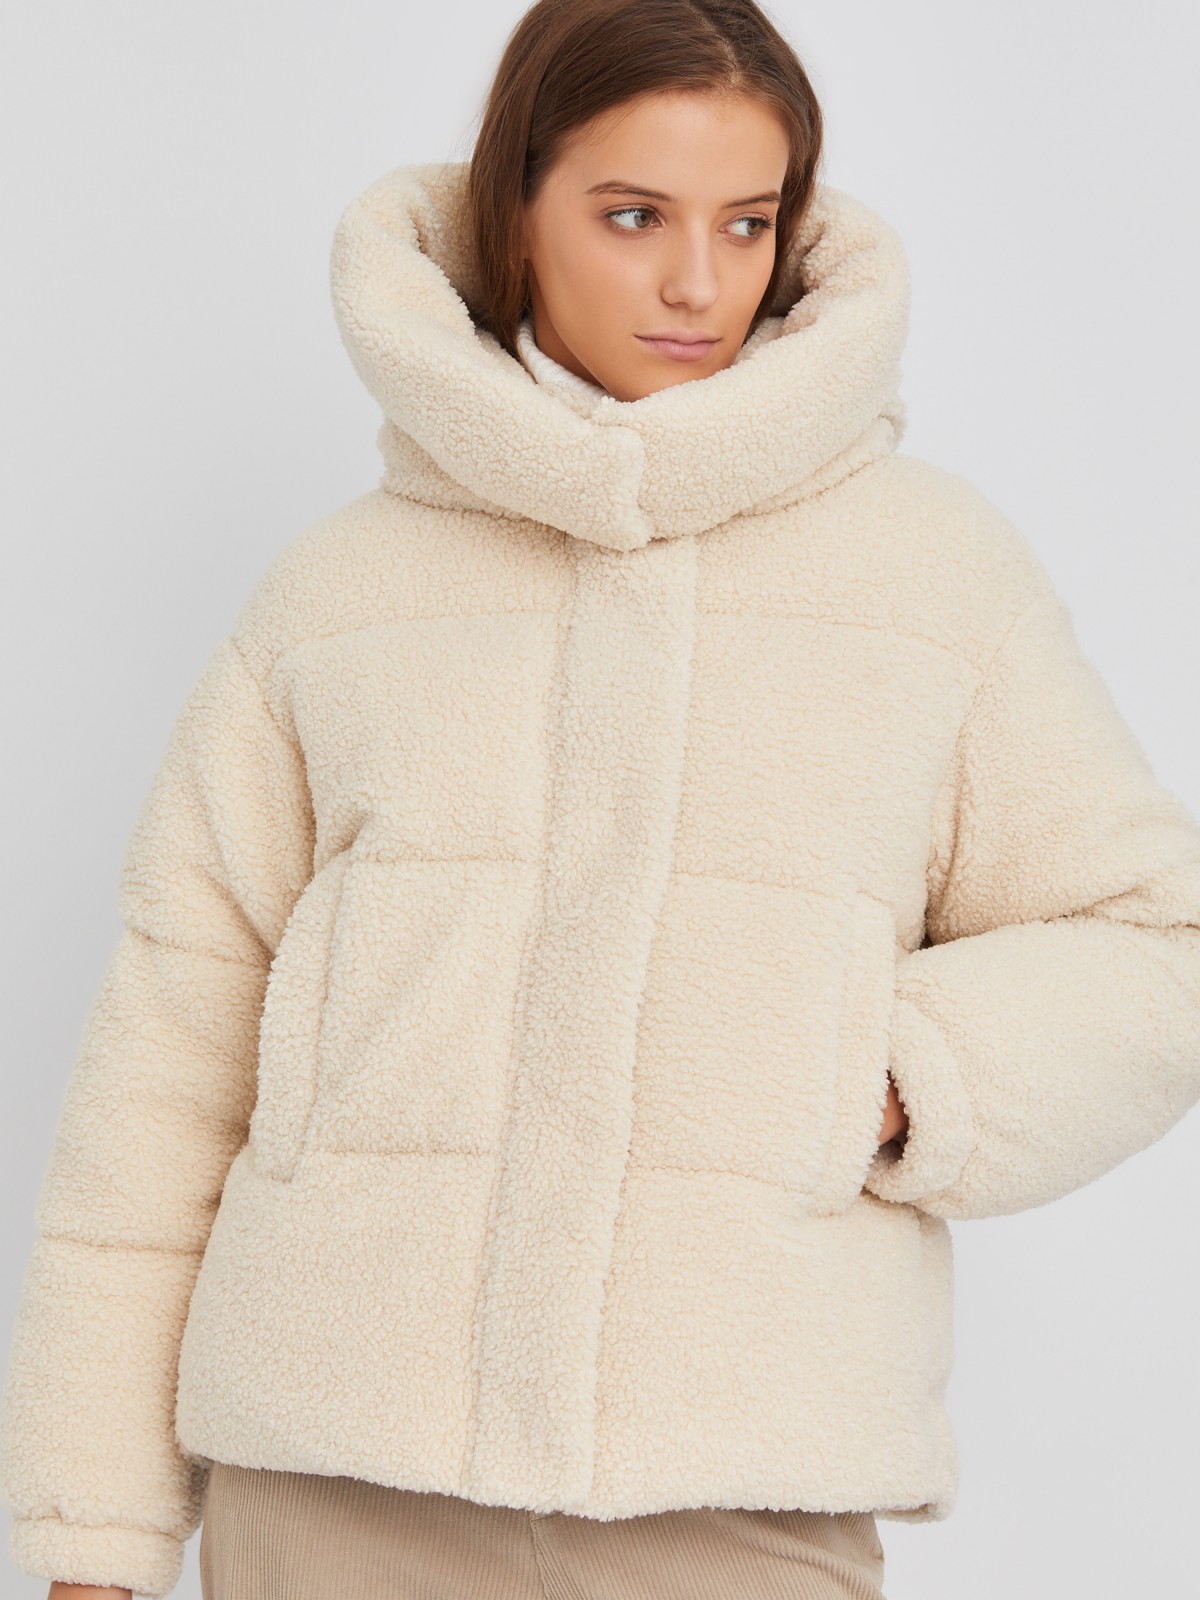 Короткая тёплая куртка-шуба из экомеха с капюшоном и двойным воротником zolla 023345550044, цвет молоко, размер XS - фото 5